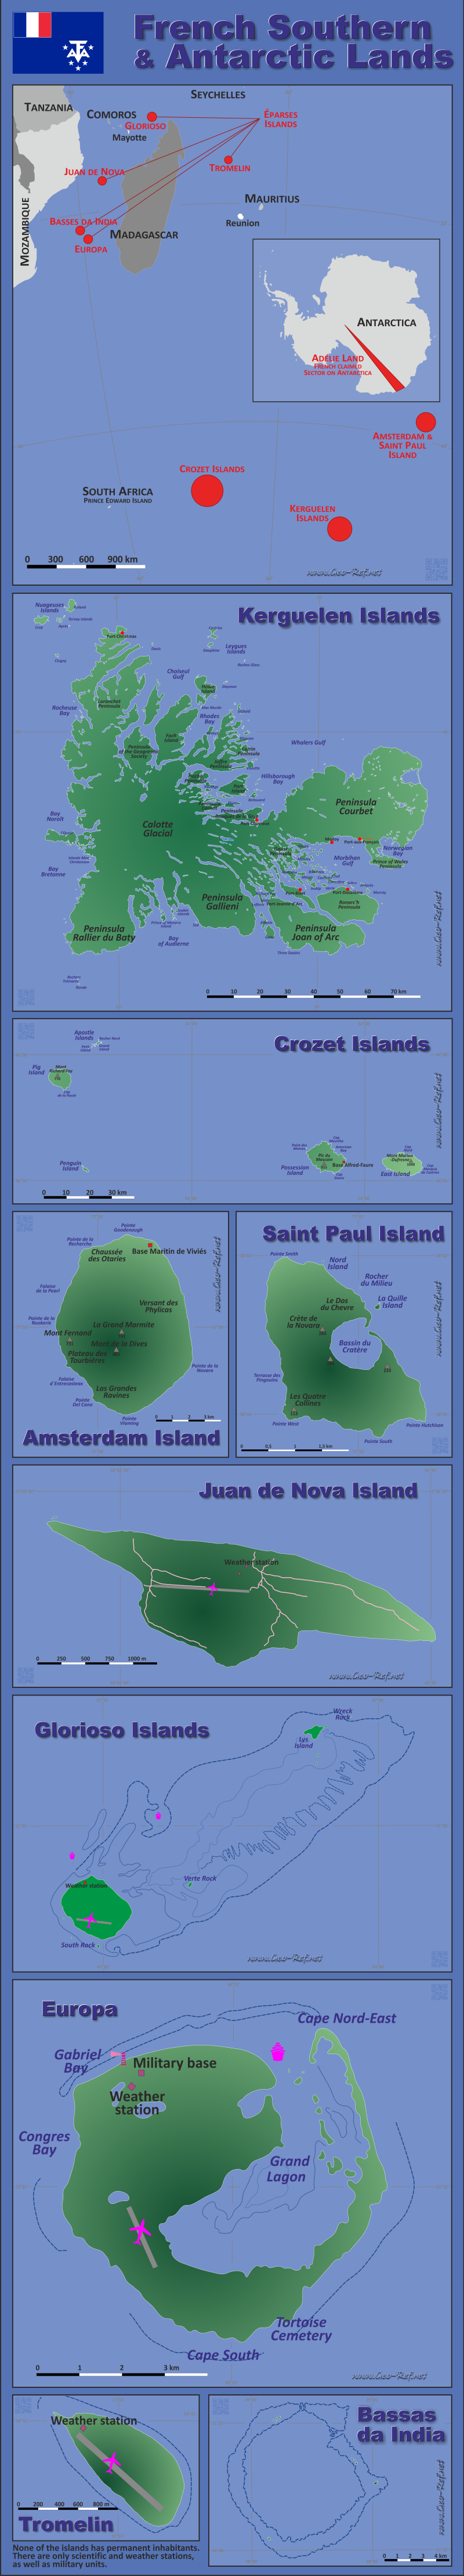 Mapa Tierras Antárticas Francesas División administrativa - Densidad de población 2012